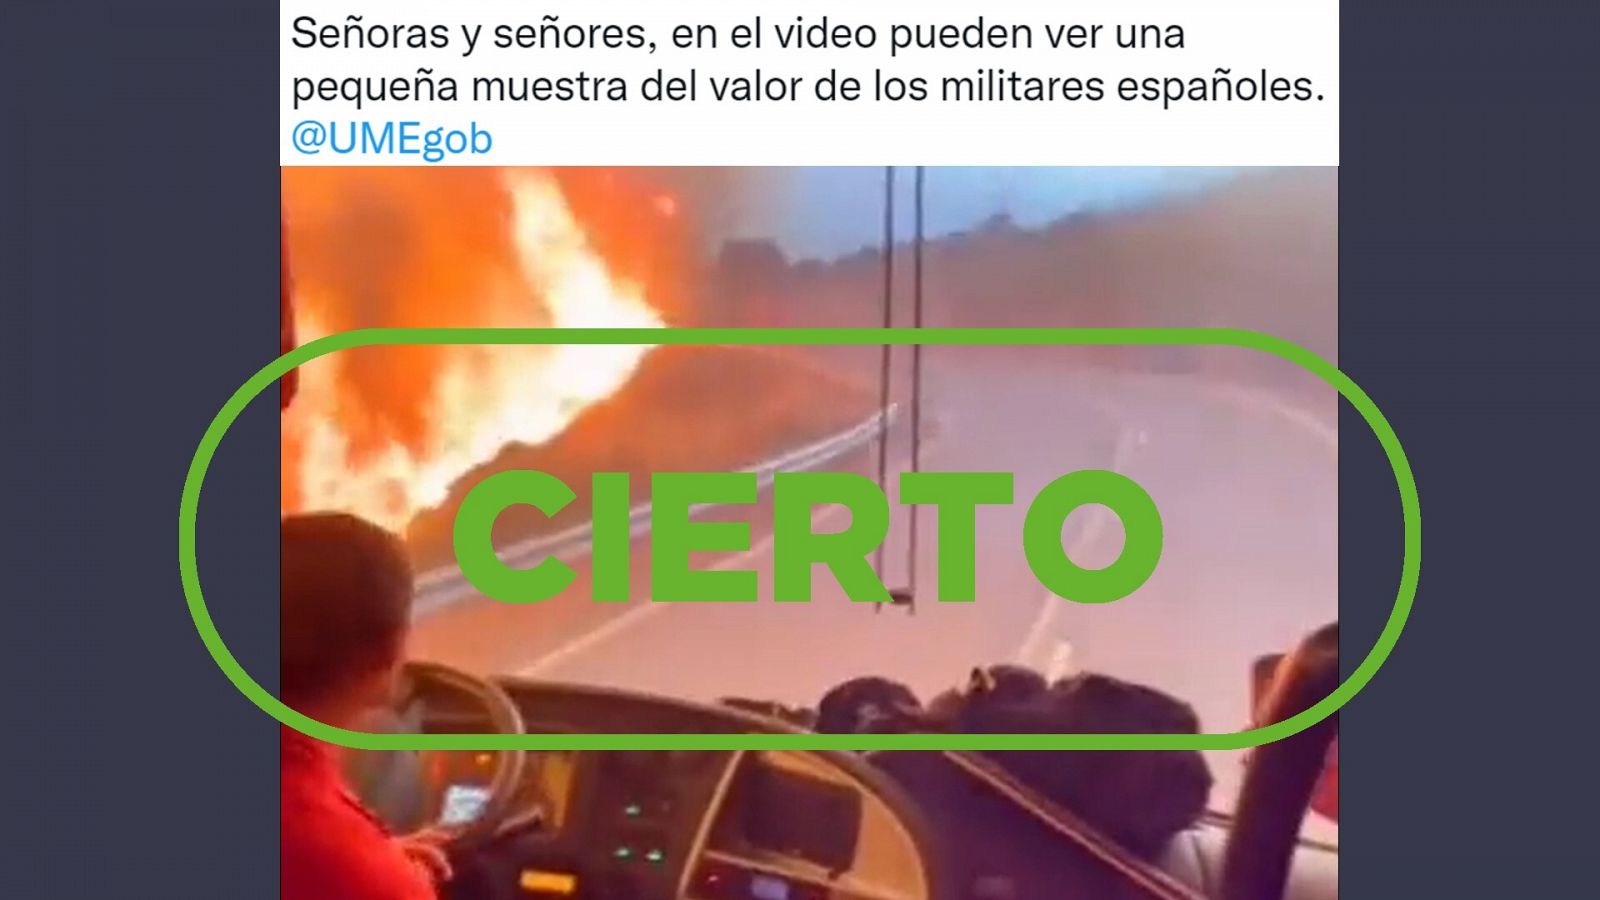 Vídeo publicado en Twitter que muestra al autobús de la UME cruzando el incendio de Bejís. Con el sello Cierto.